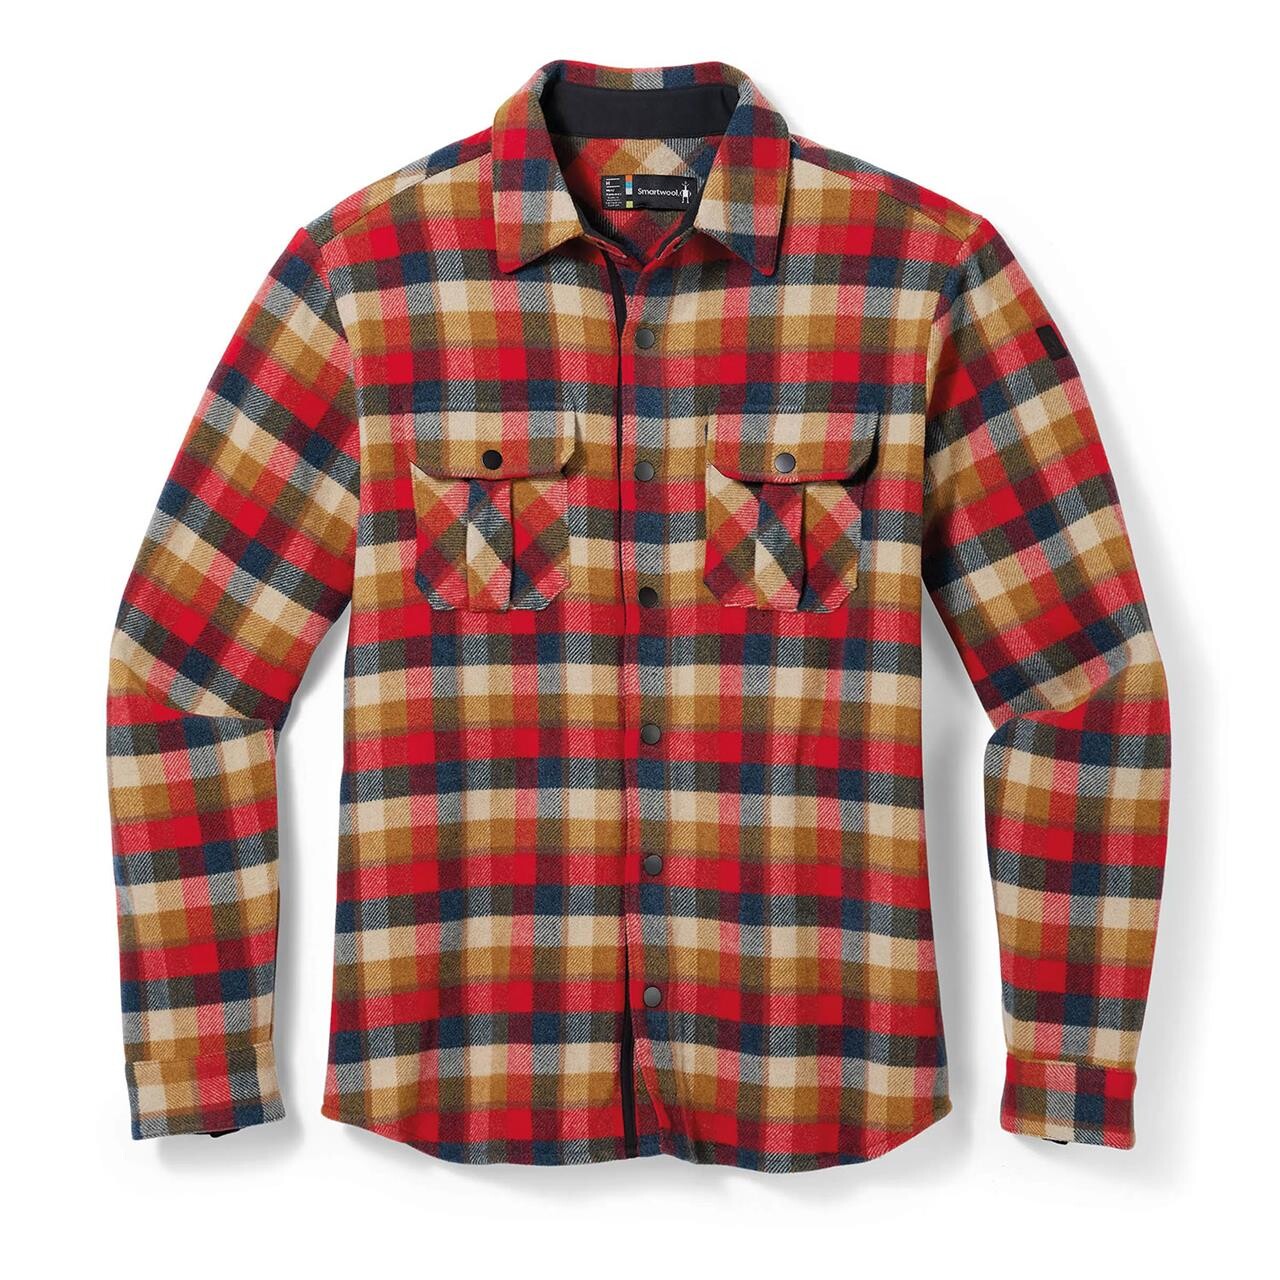 Billede af Smartwool Mens Anchor Line Shirt Jacket (Rød (RHYTMIC RED PLAID) Small)